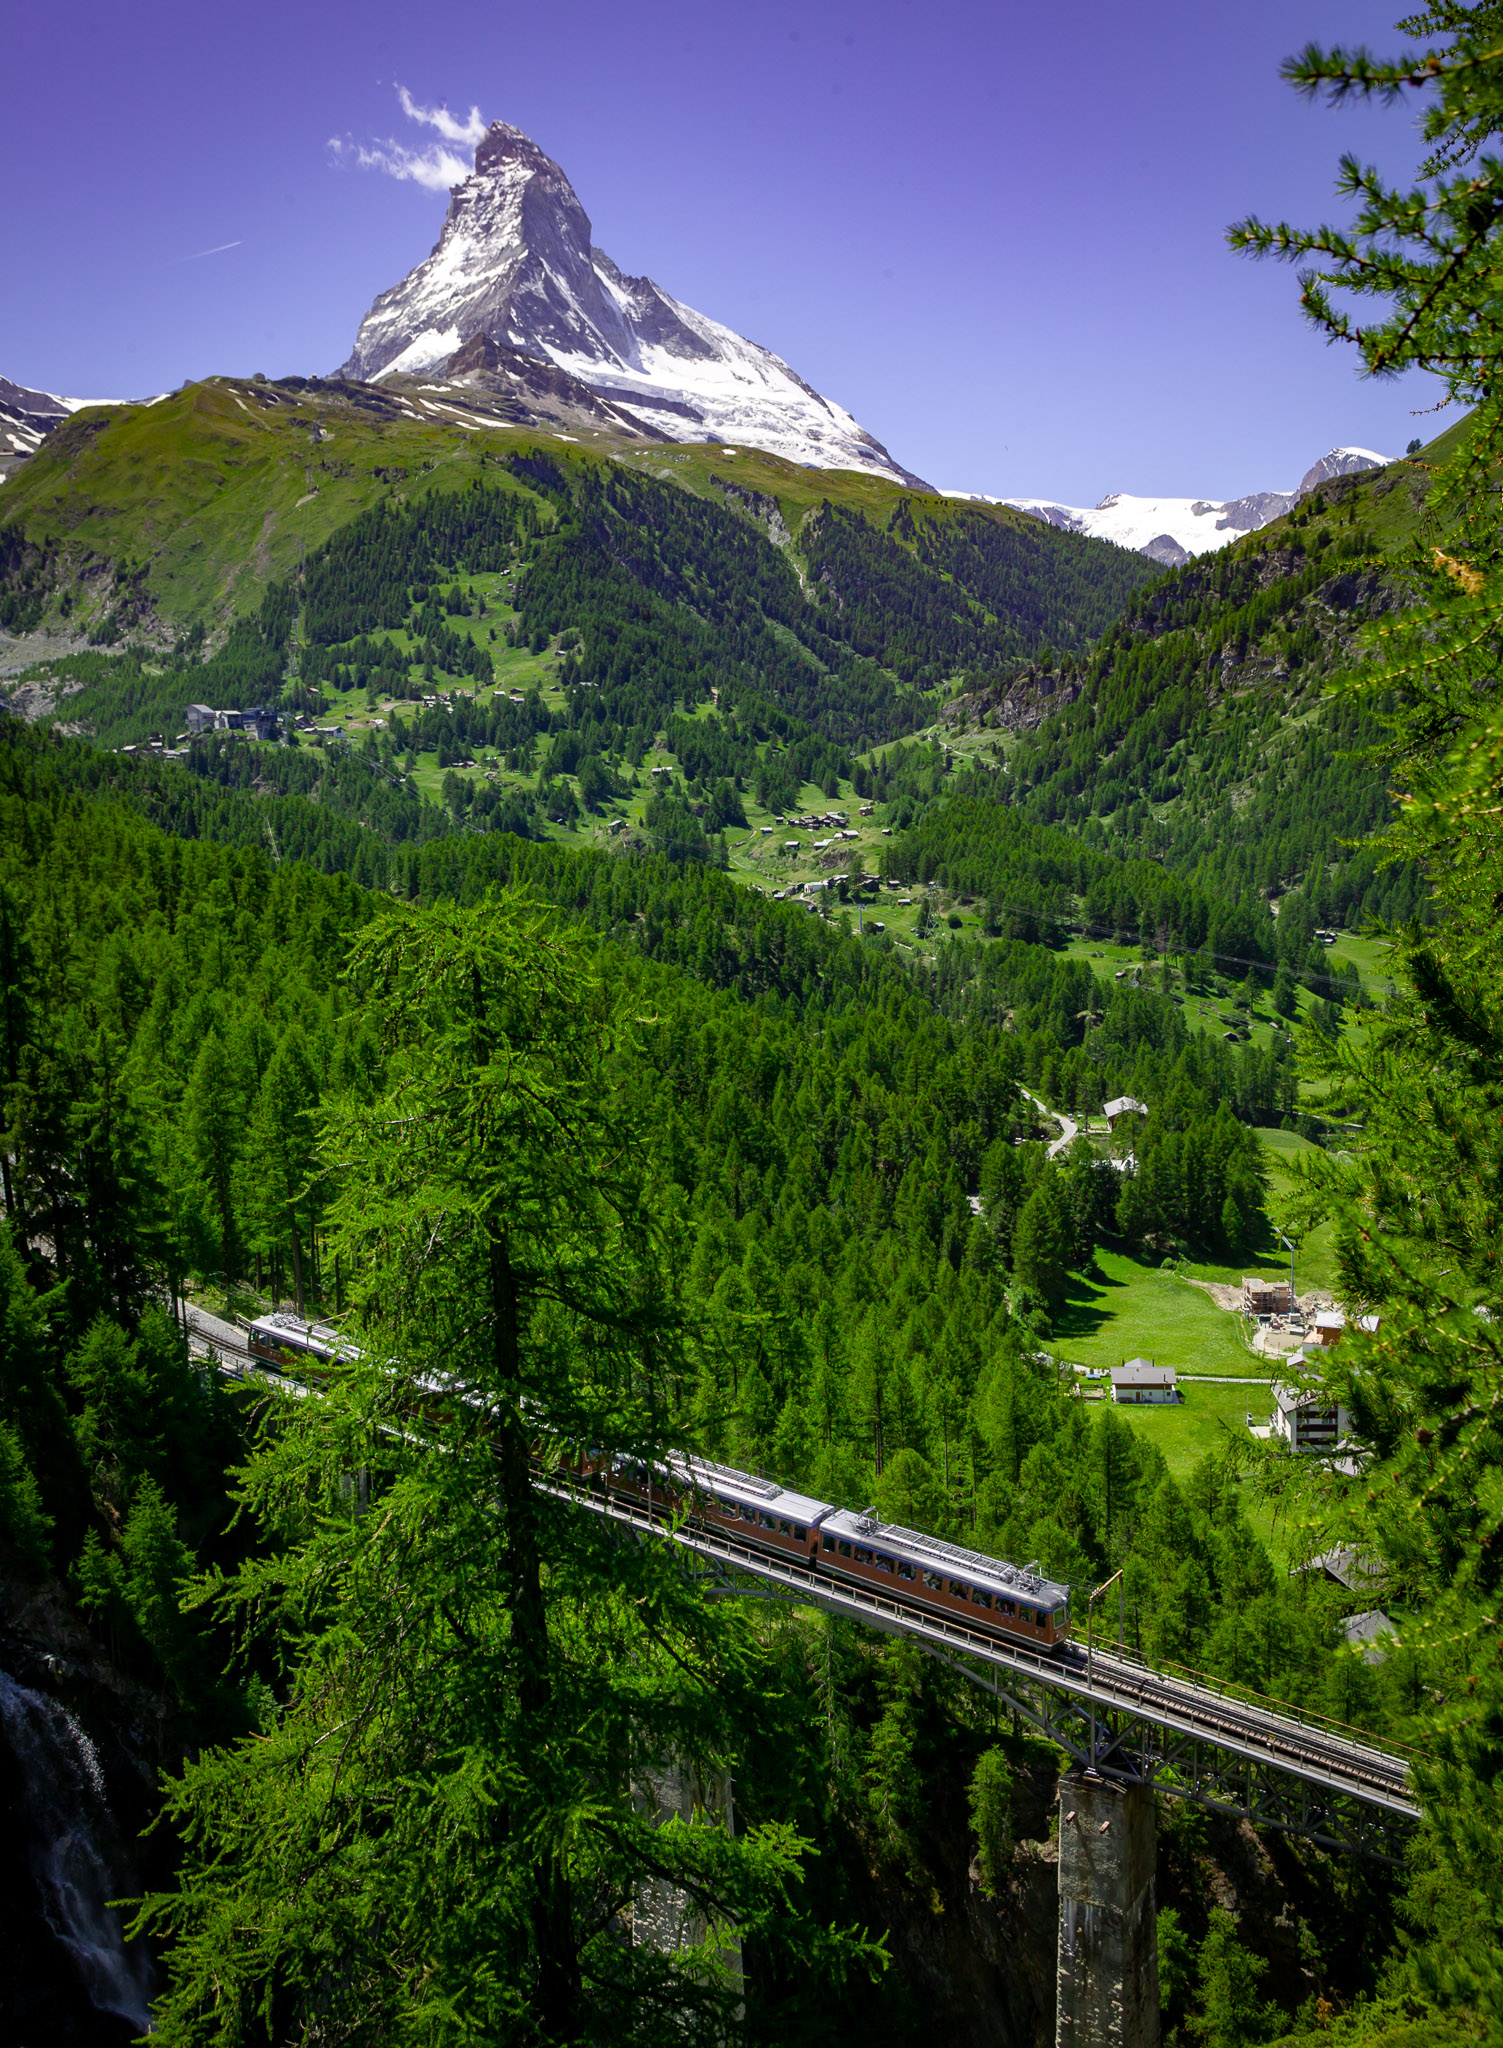 Gornergrat railway just above Zermatt